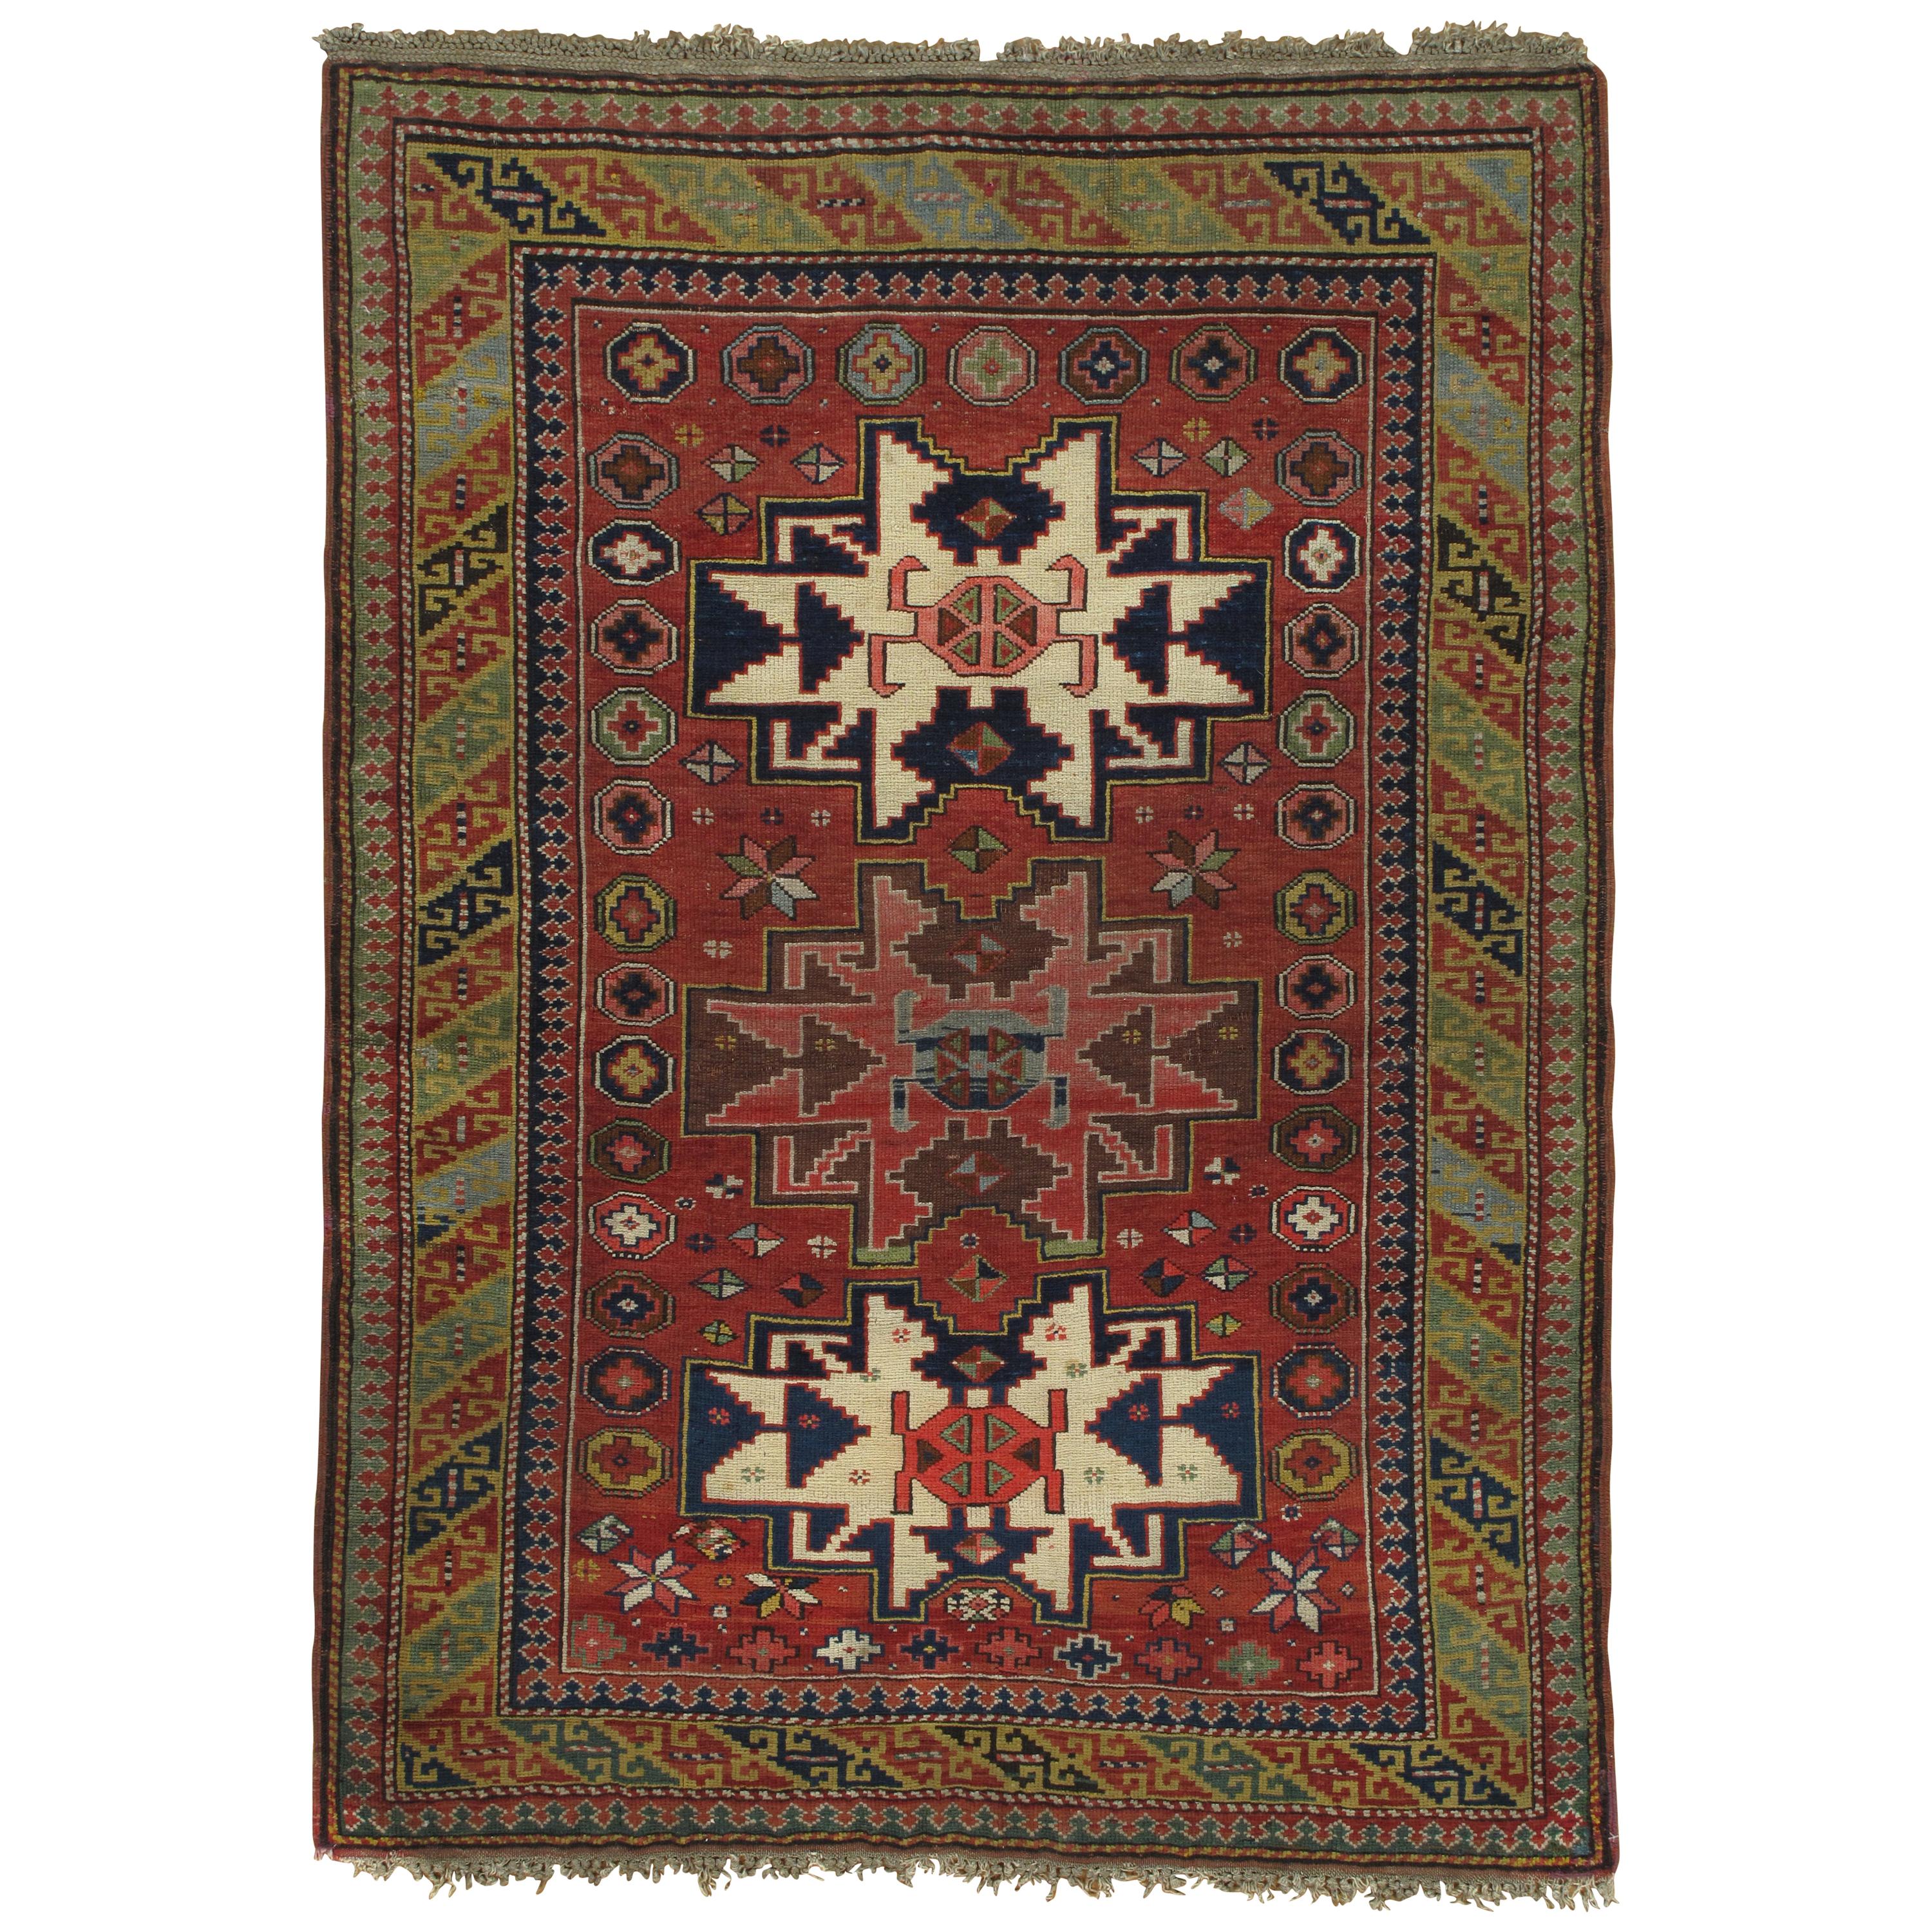 Antiker Kuba-Teppich, handgefertigter orientalischer Teppich, rot, grün, gelb, elfenbein, blau, weiß